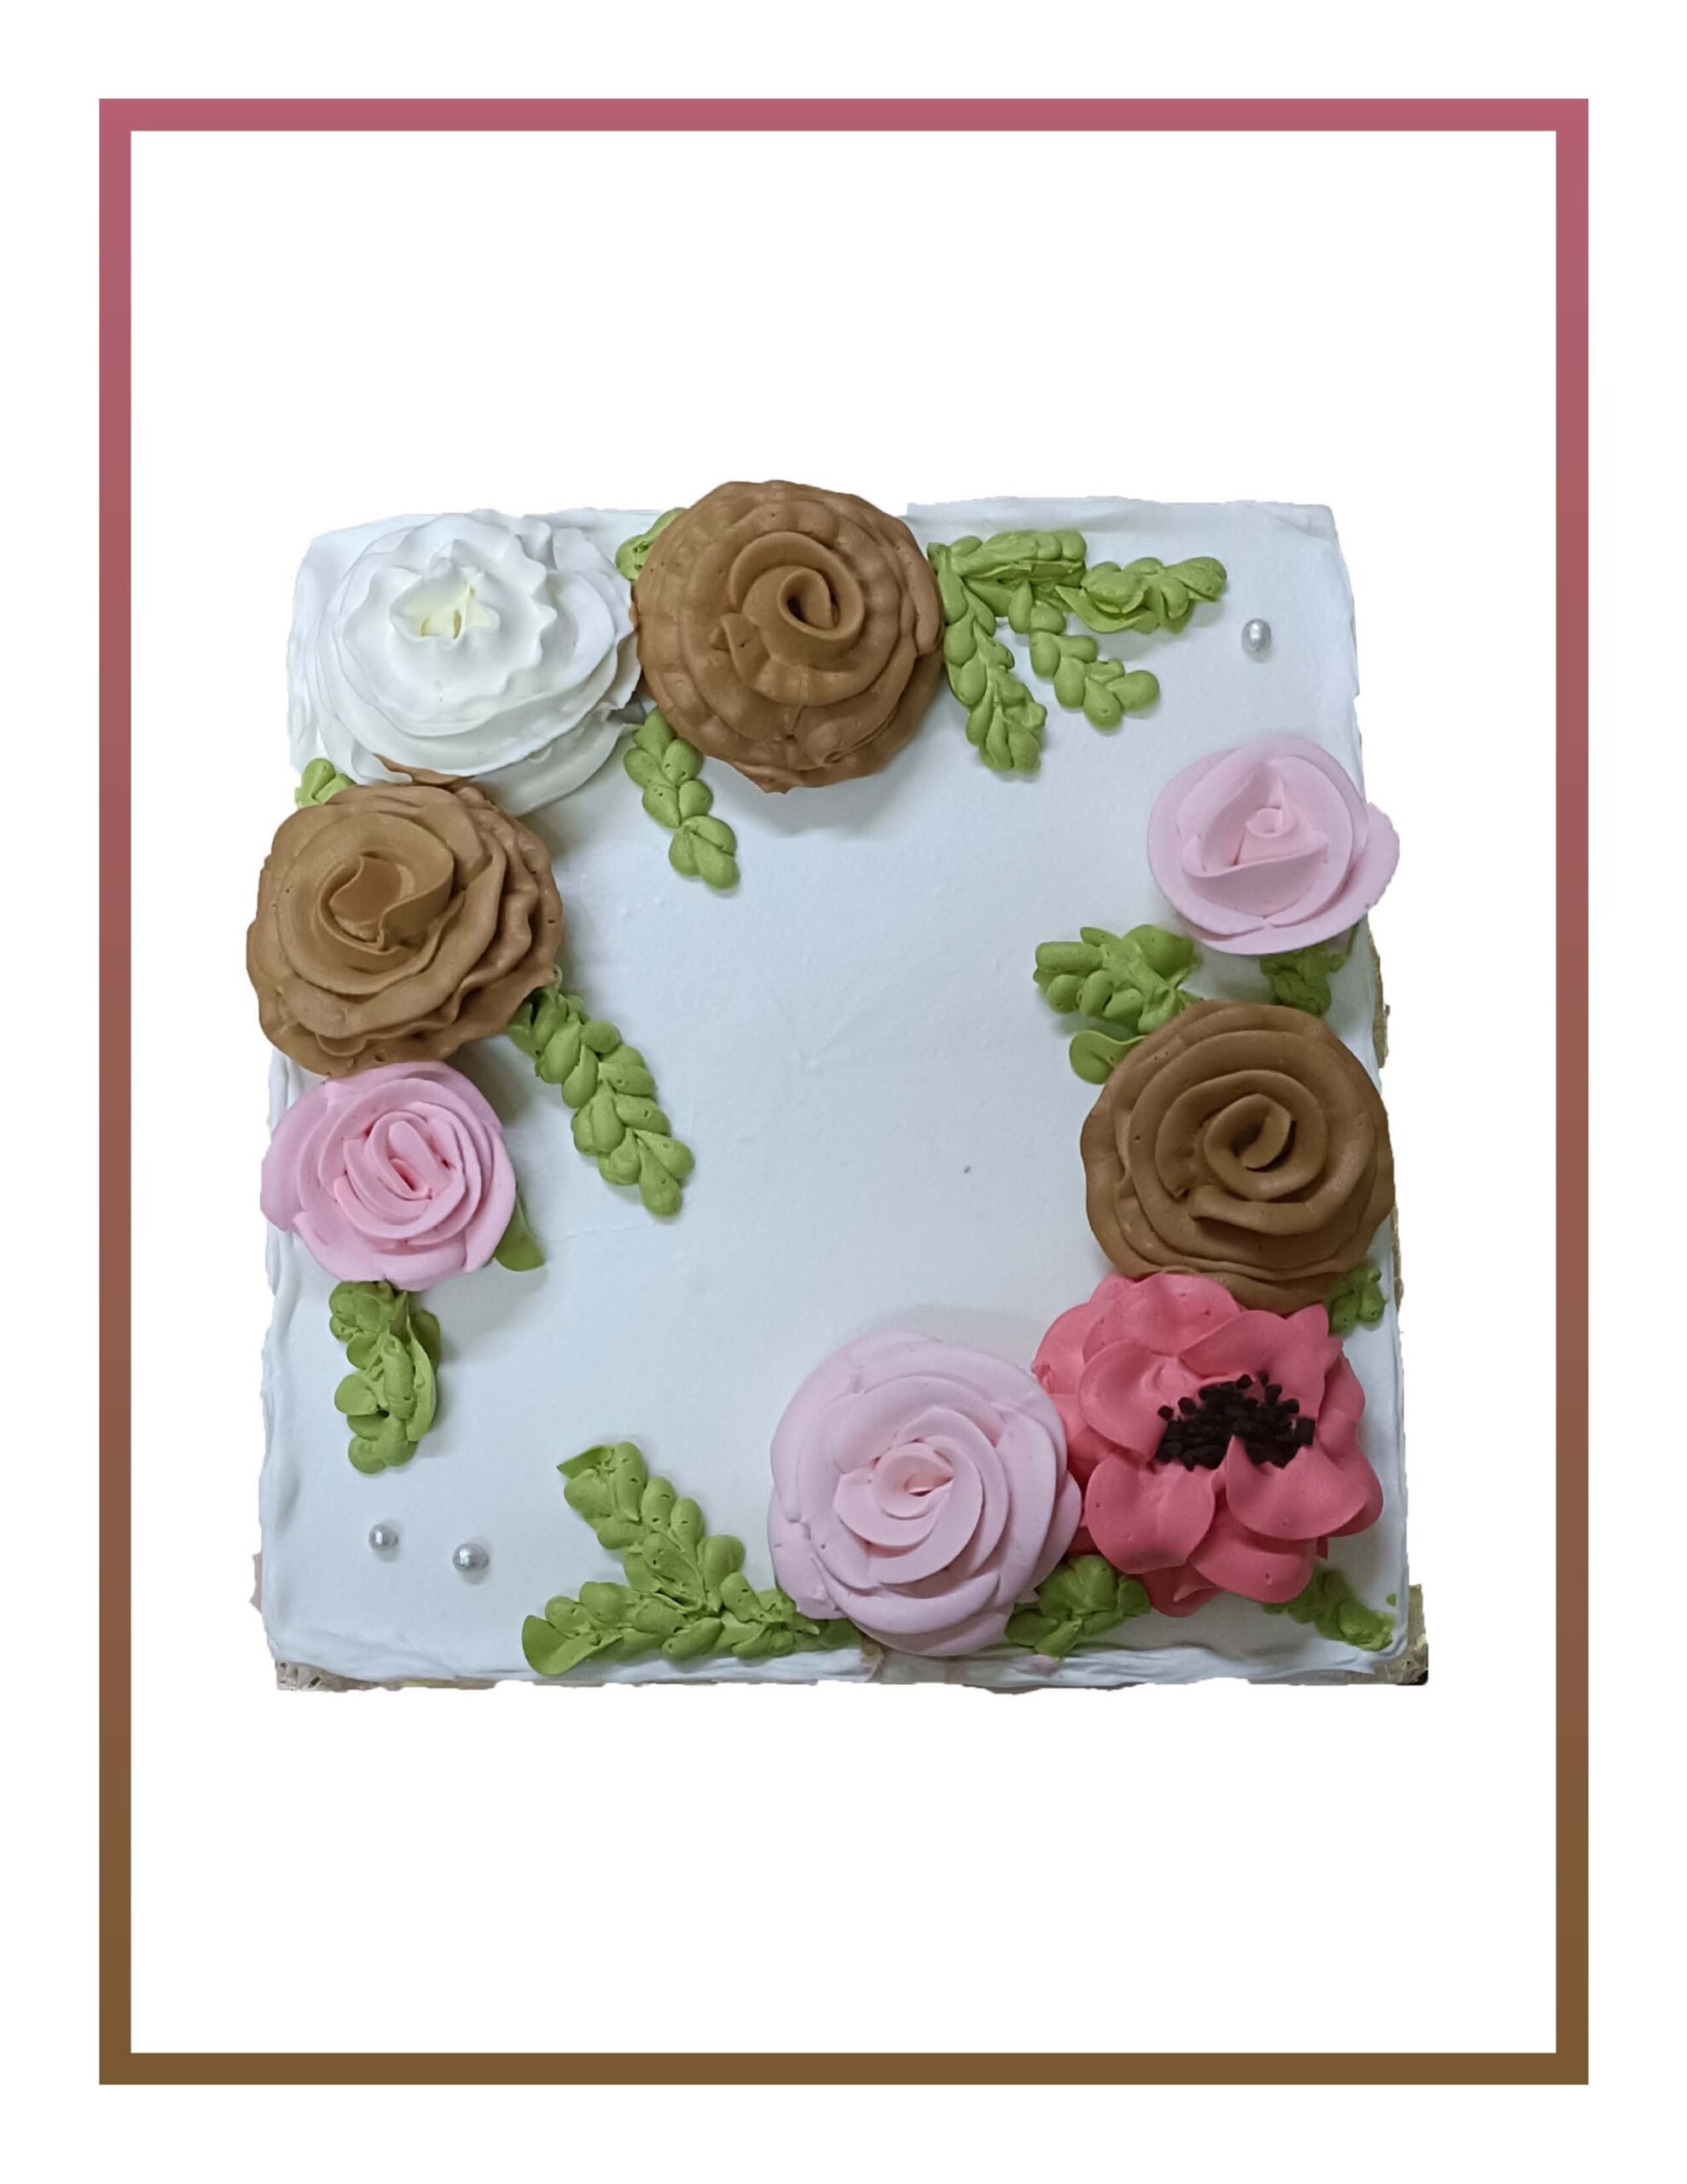 Flower Cakes